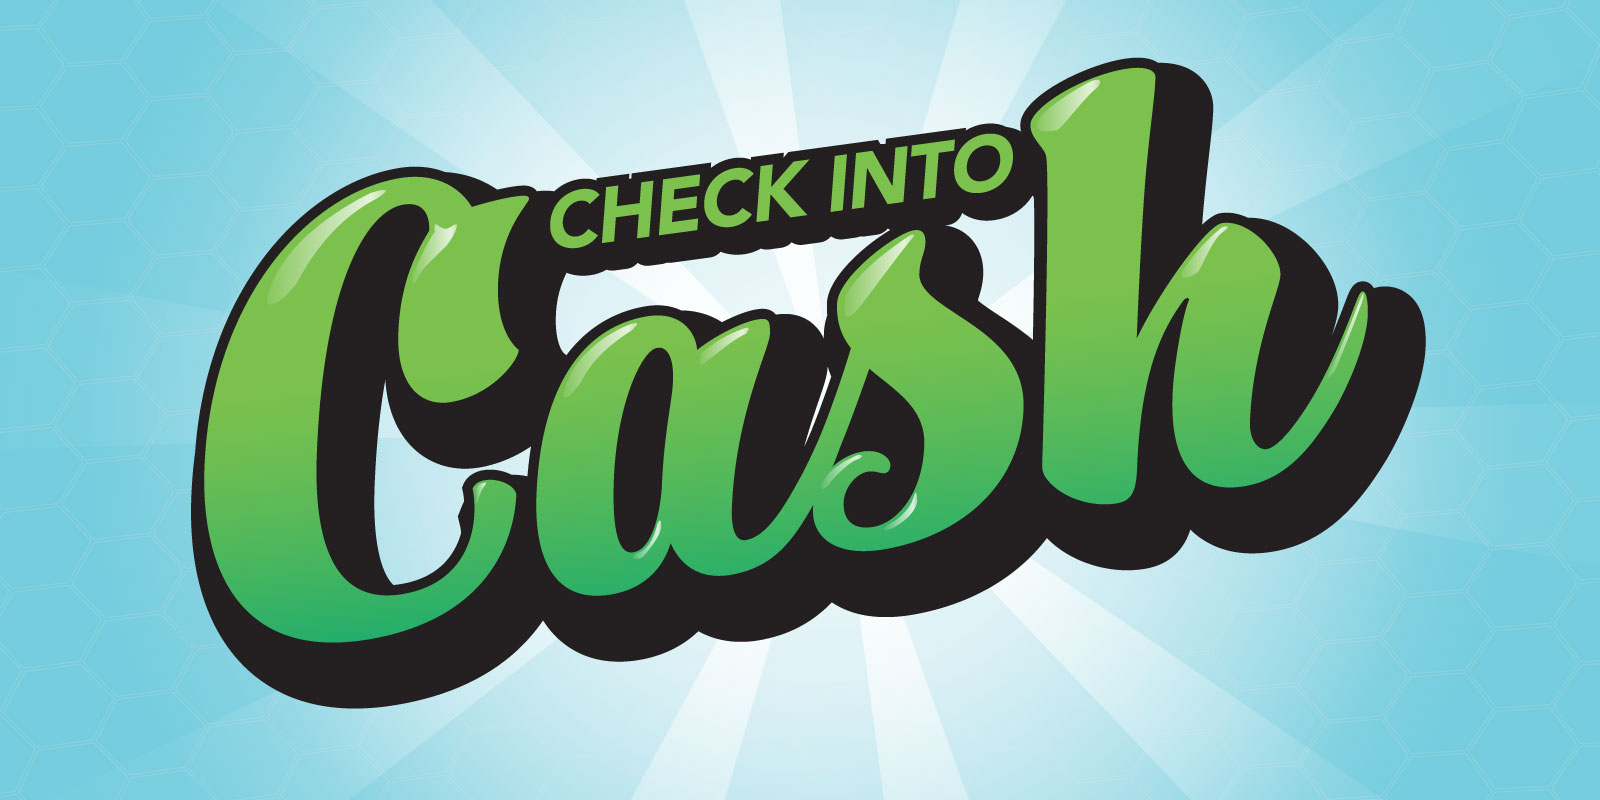 Check Into Cash alternate logo